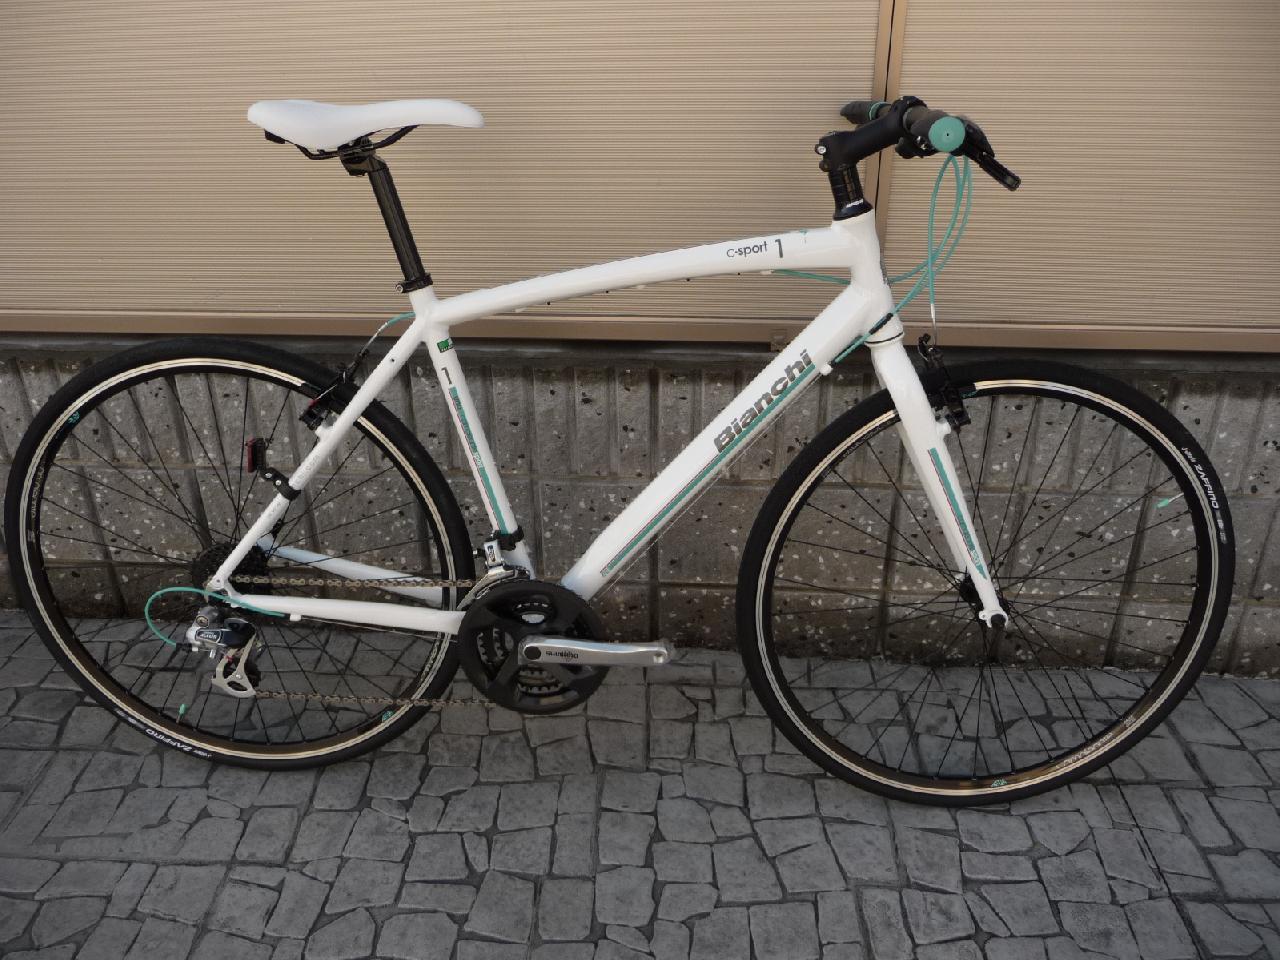 週末限定値下げ！ビアンキ BIANCHI クロスバイク C-SPORT1 - 自転車